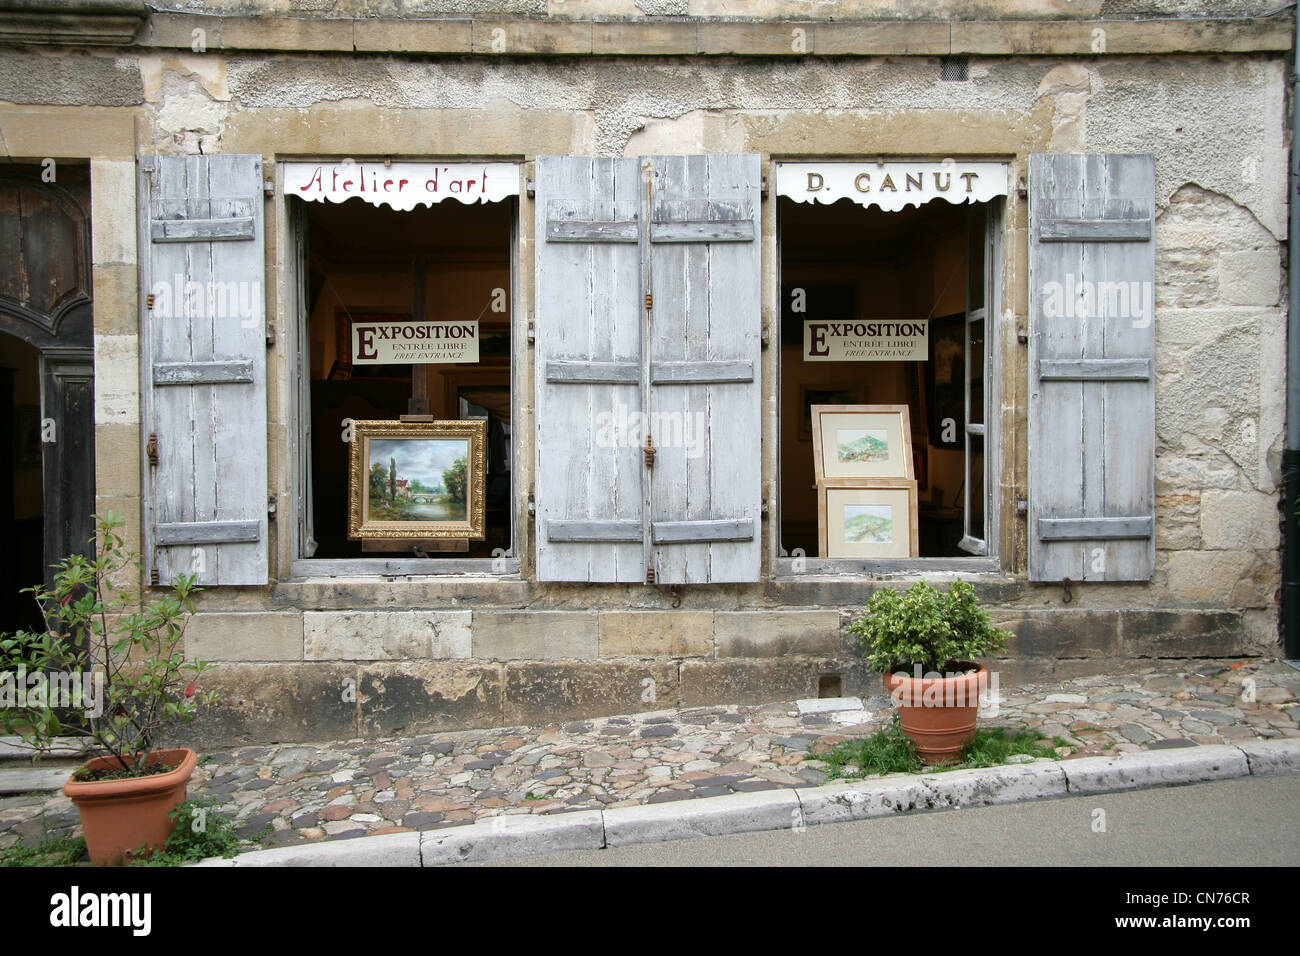 Vezelay pittoresk french village french art shop Stock Photo